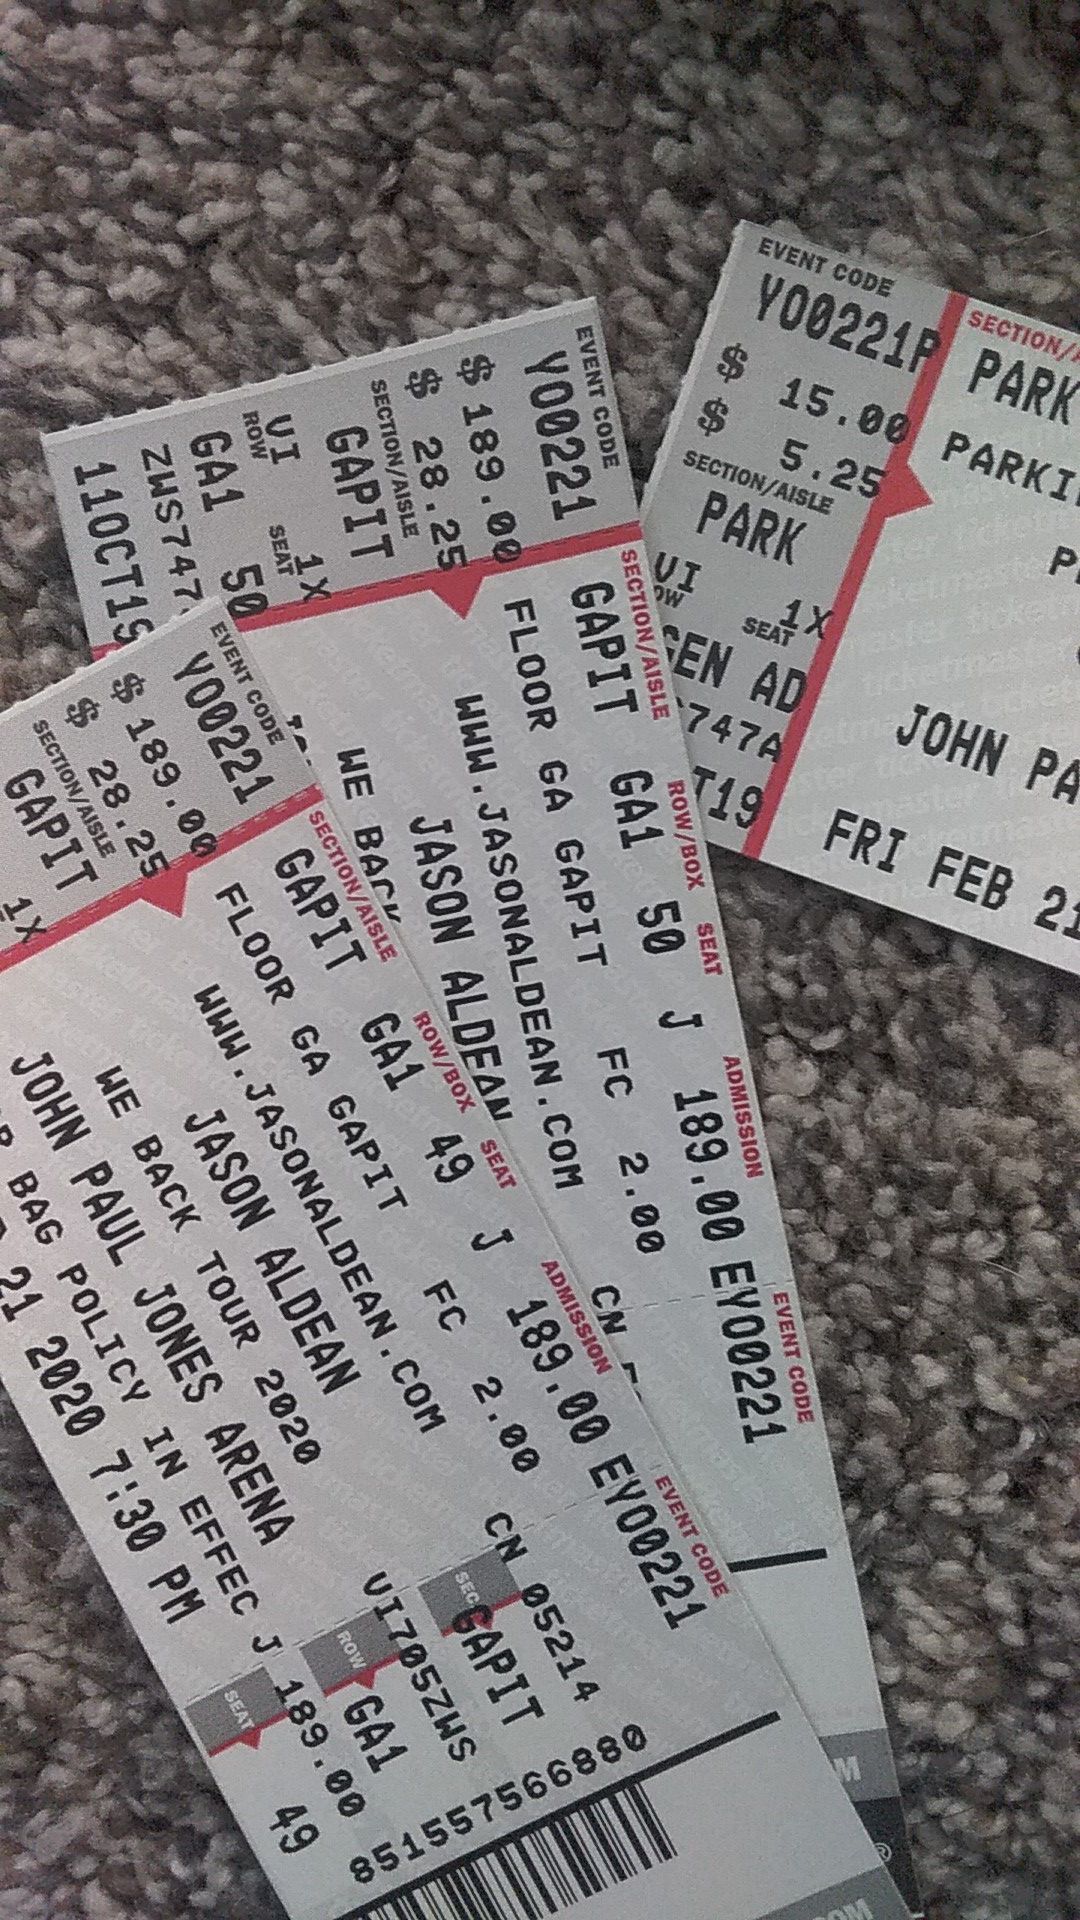 Jason Aldean Concert tickets - THIS WEEKEND